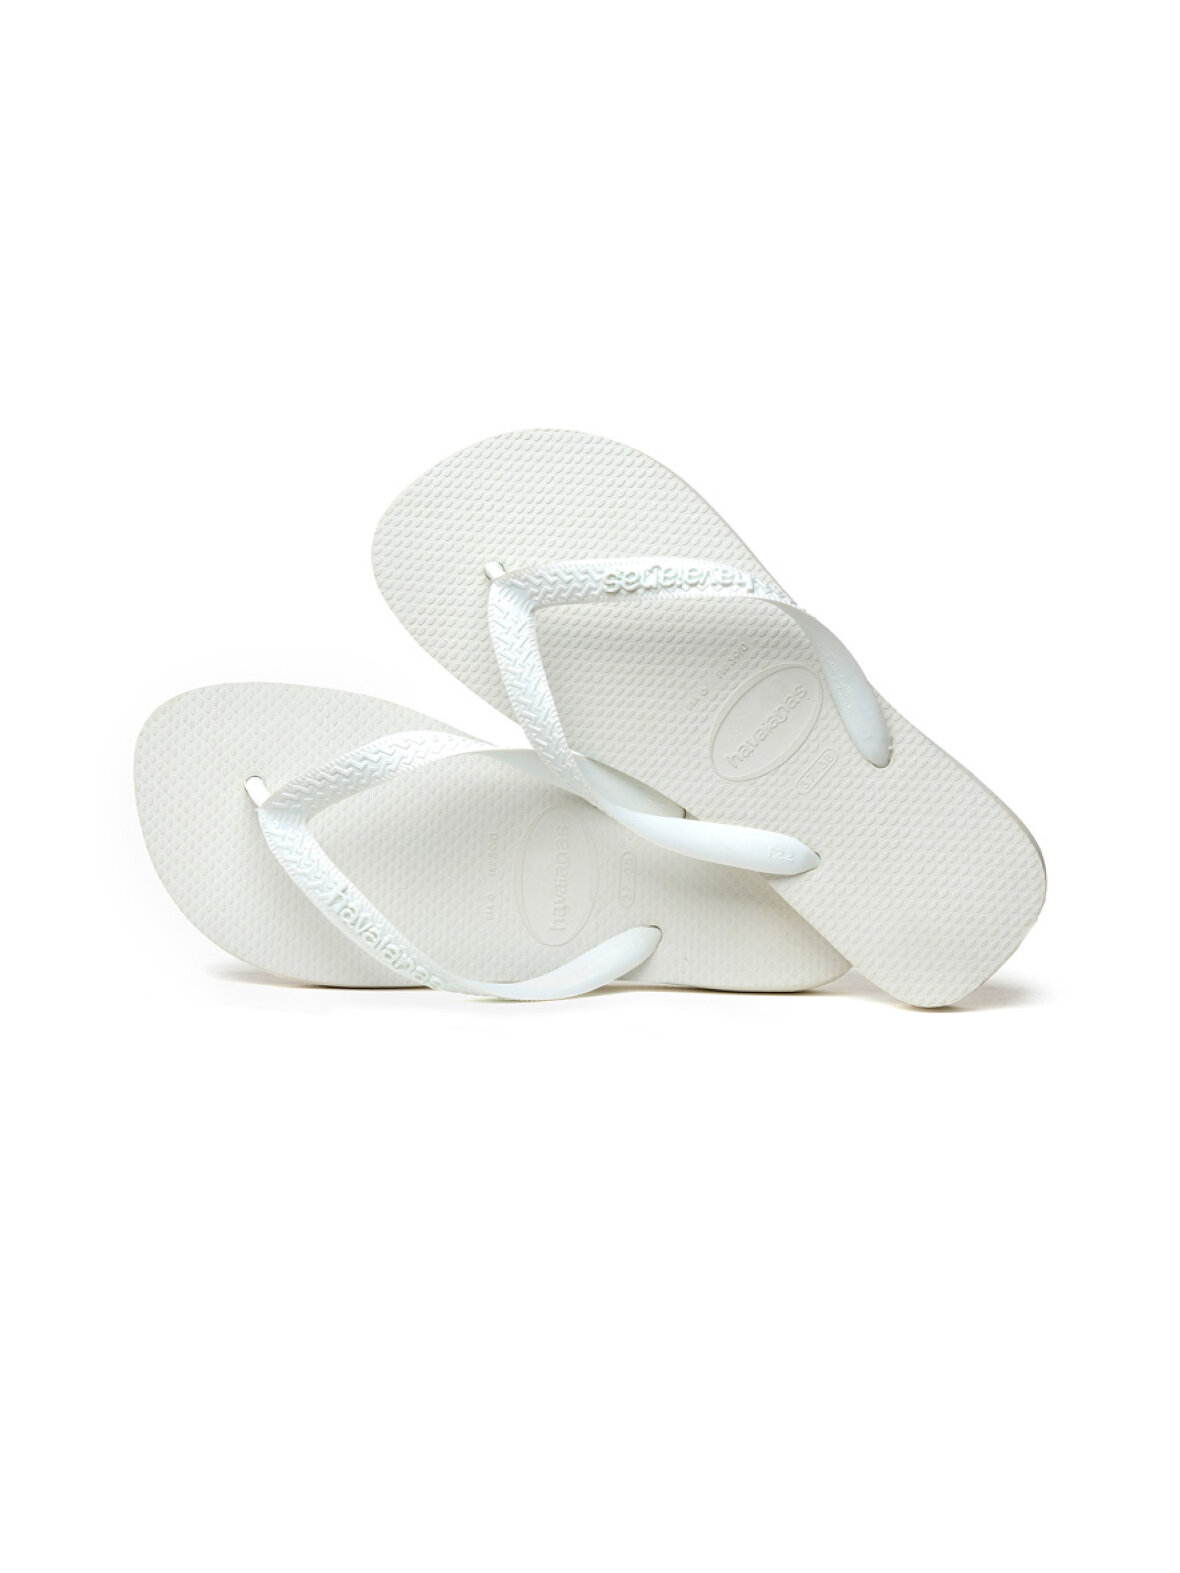 sammen middag Kan ignoreres A'POKE - Havaianas Top - White - Flip Flop sandaler